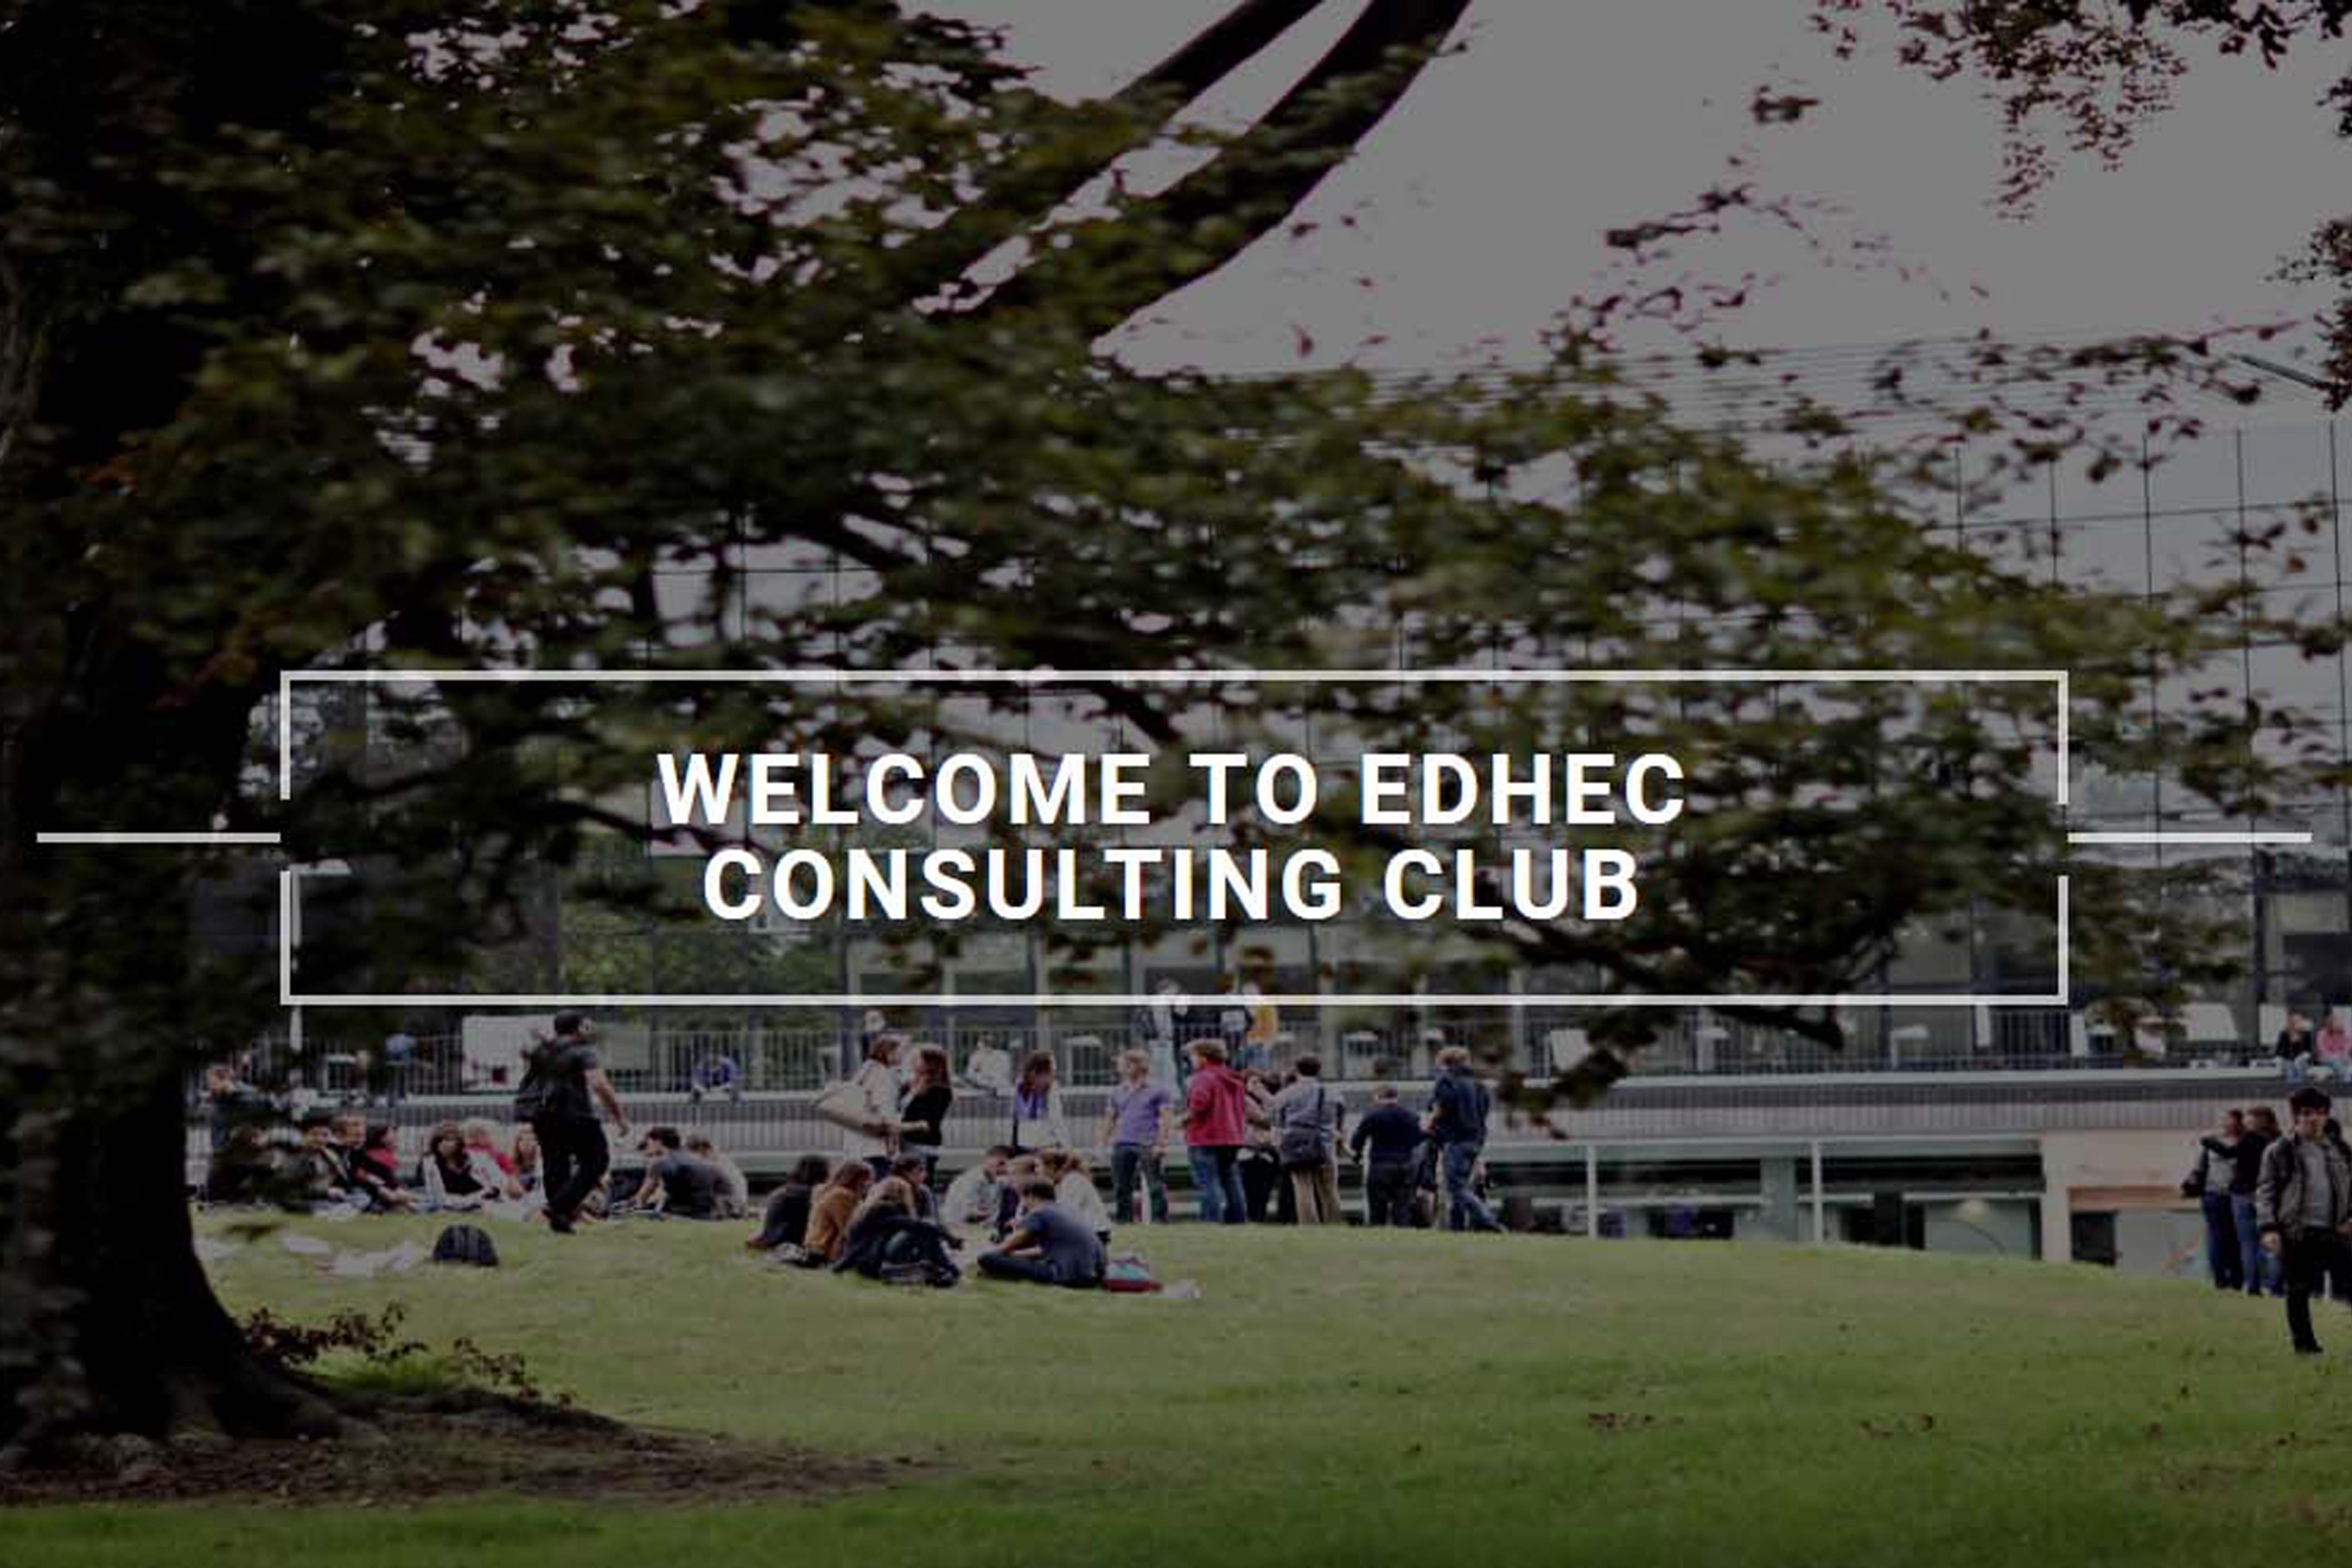 EDHEC Consulting Club website design